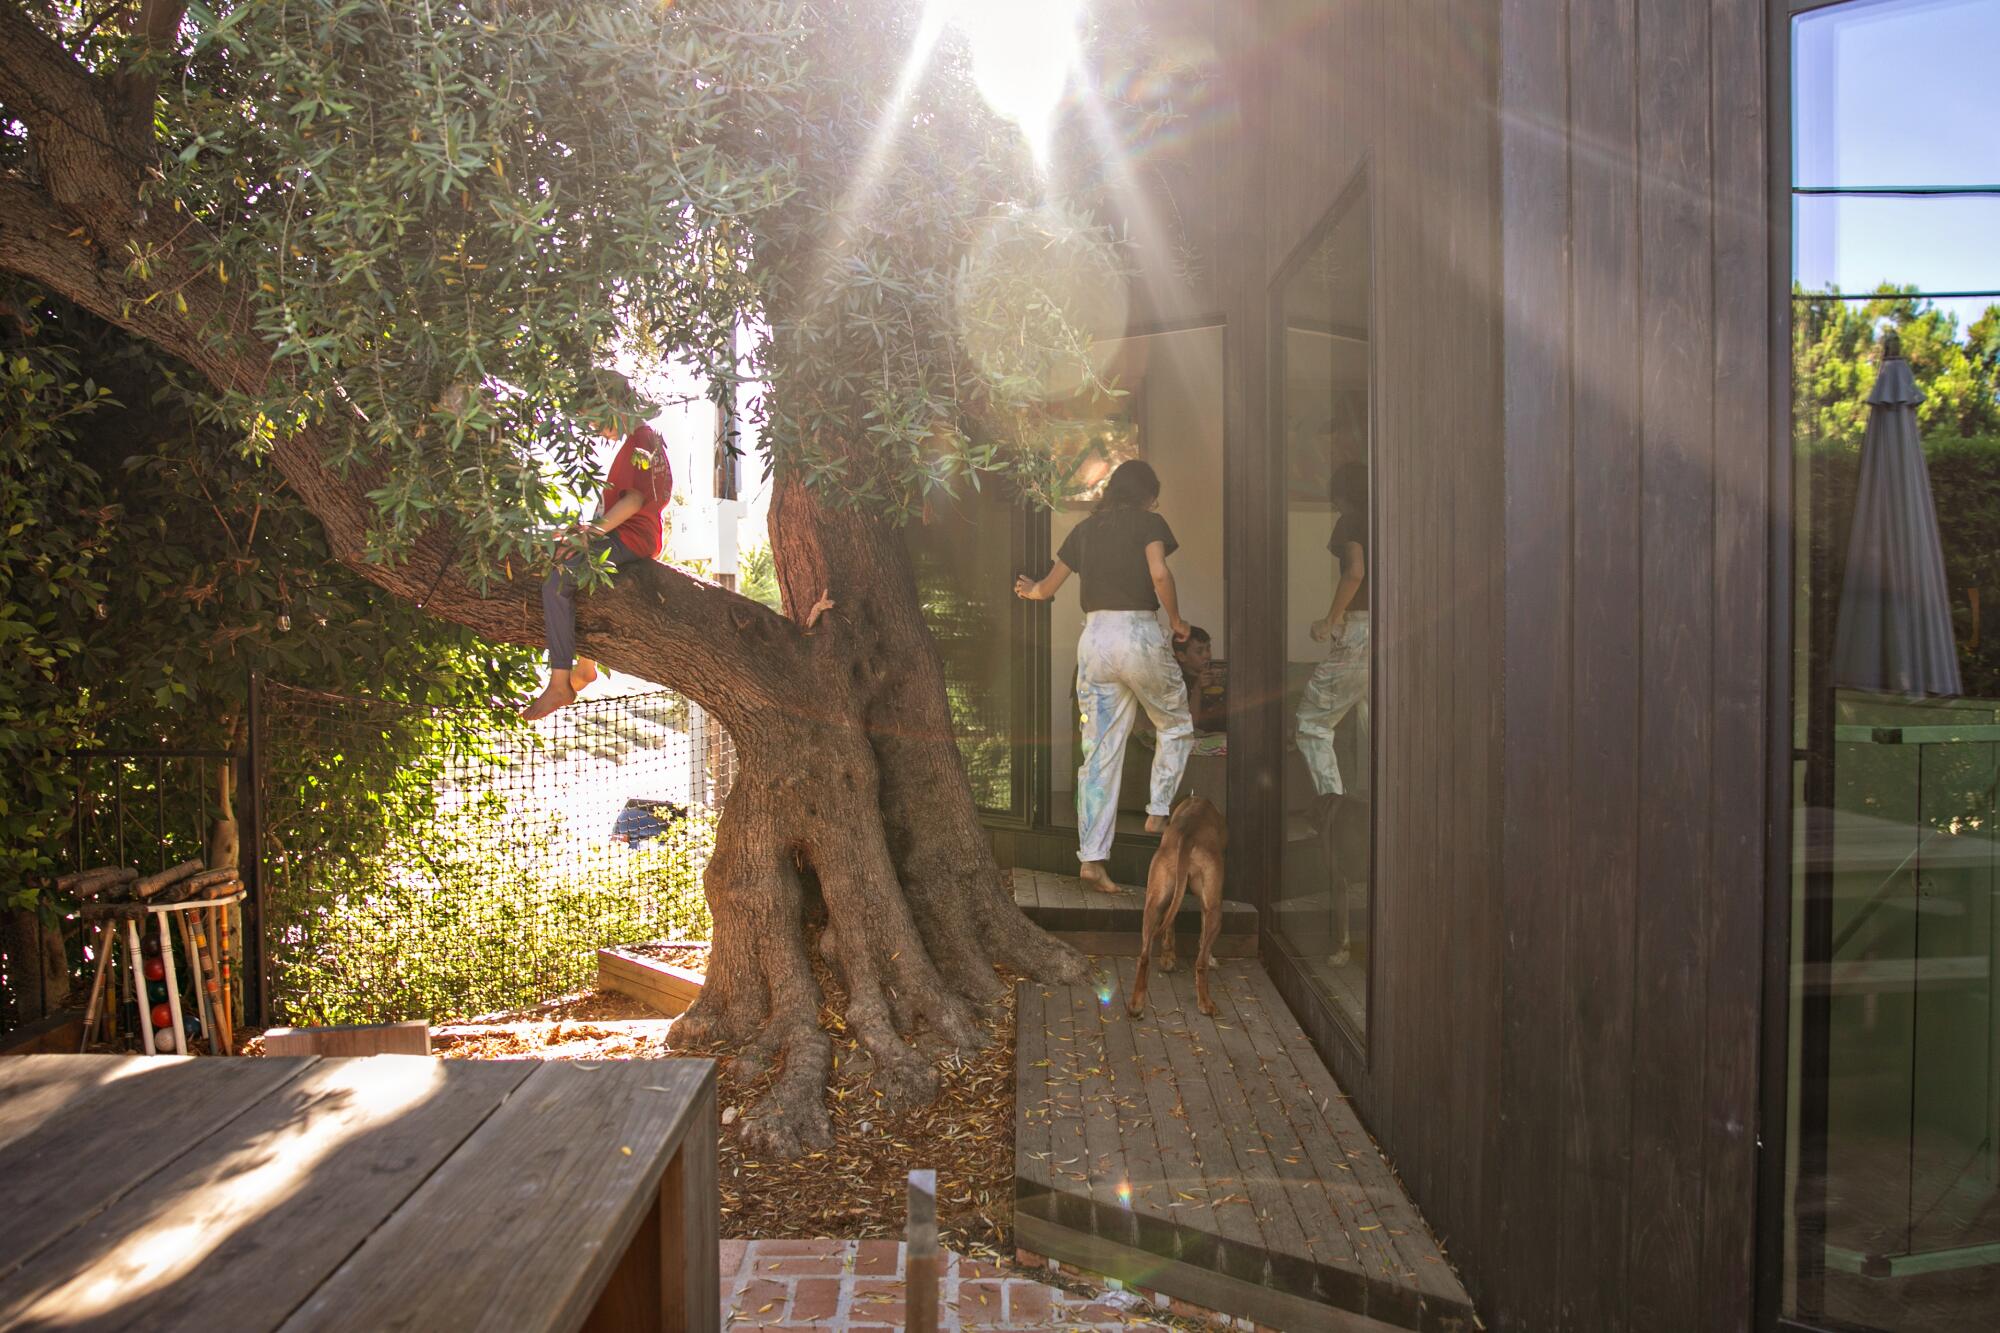 Eine Frau betritt zusammen mit einem Hund ein Haus, während draußen ein Junge auf einem Baum sitzt.